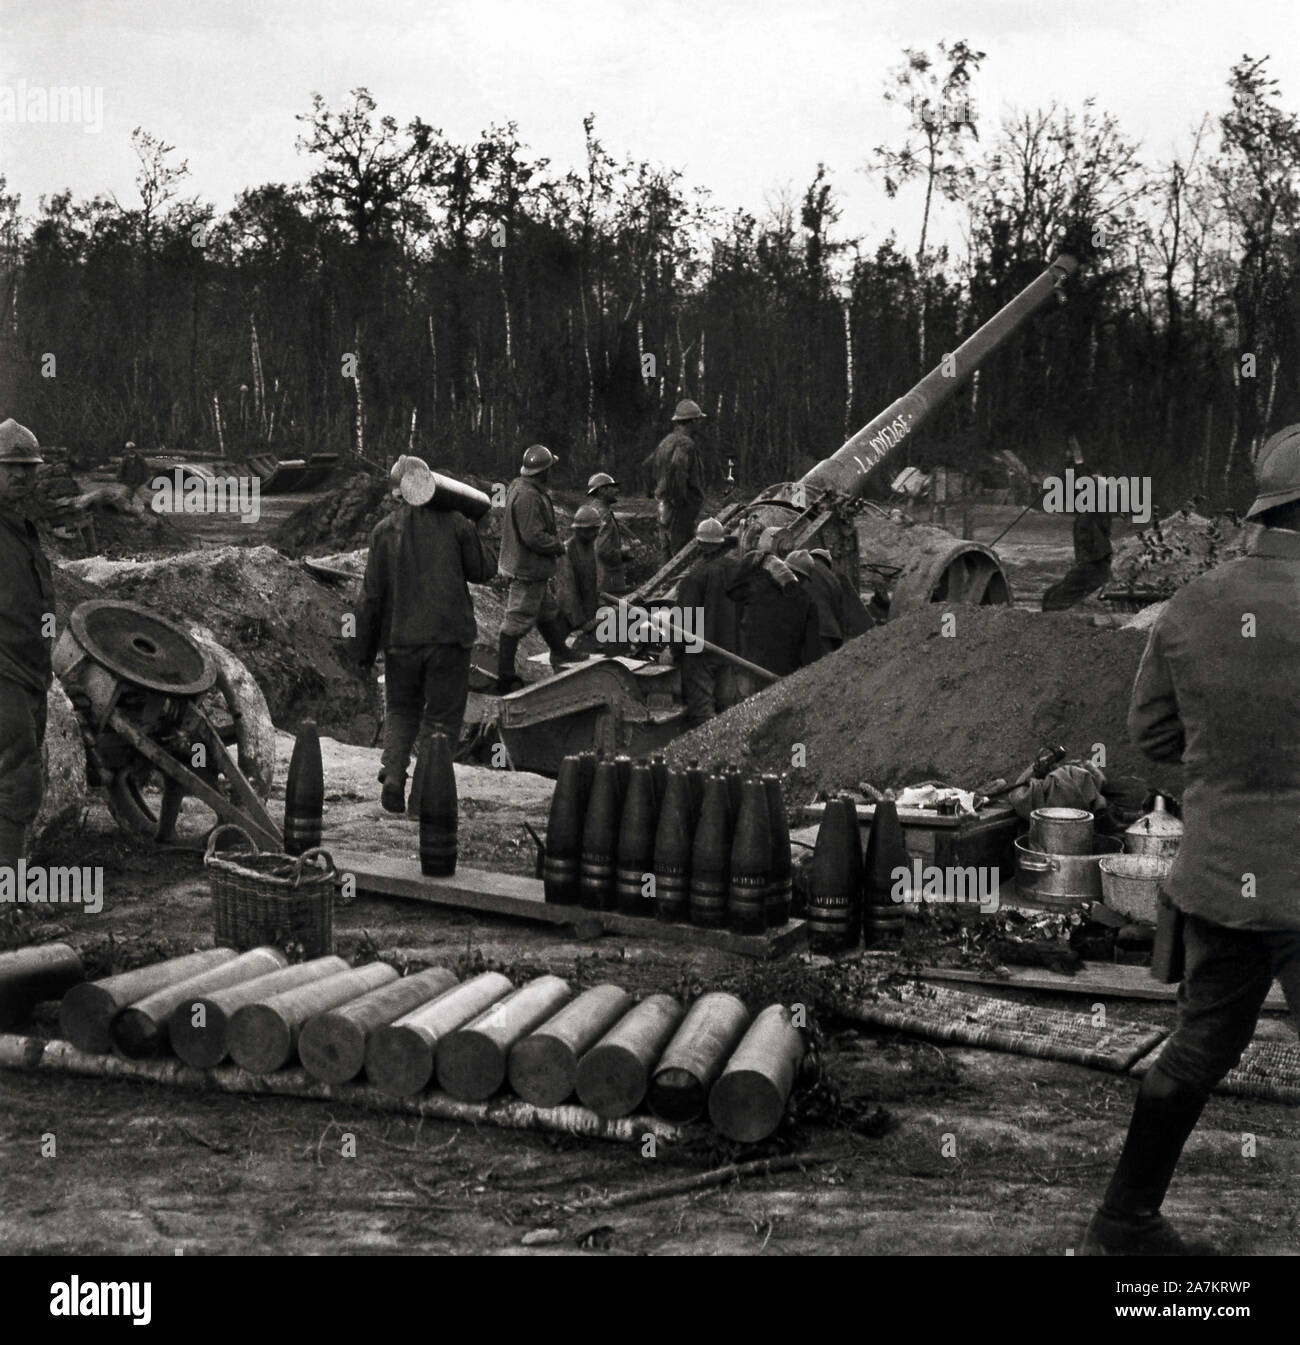 Le Première Guerre Mondiale, vue d'une batterie d'artillerie de calibre  120mm de l'armee Francaise, surnommee "La Joyeuse". Photographie,  1914-1918, Pari Photo Stock - Alamy